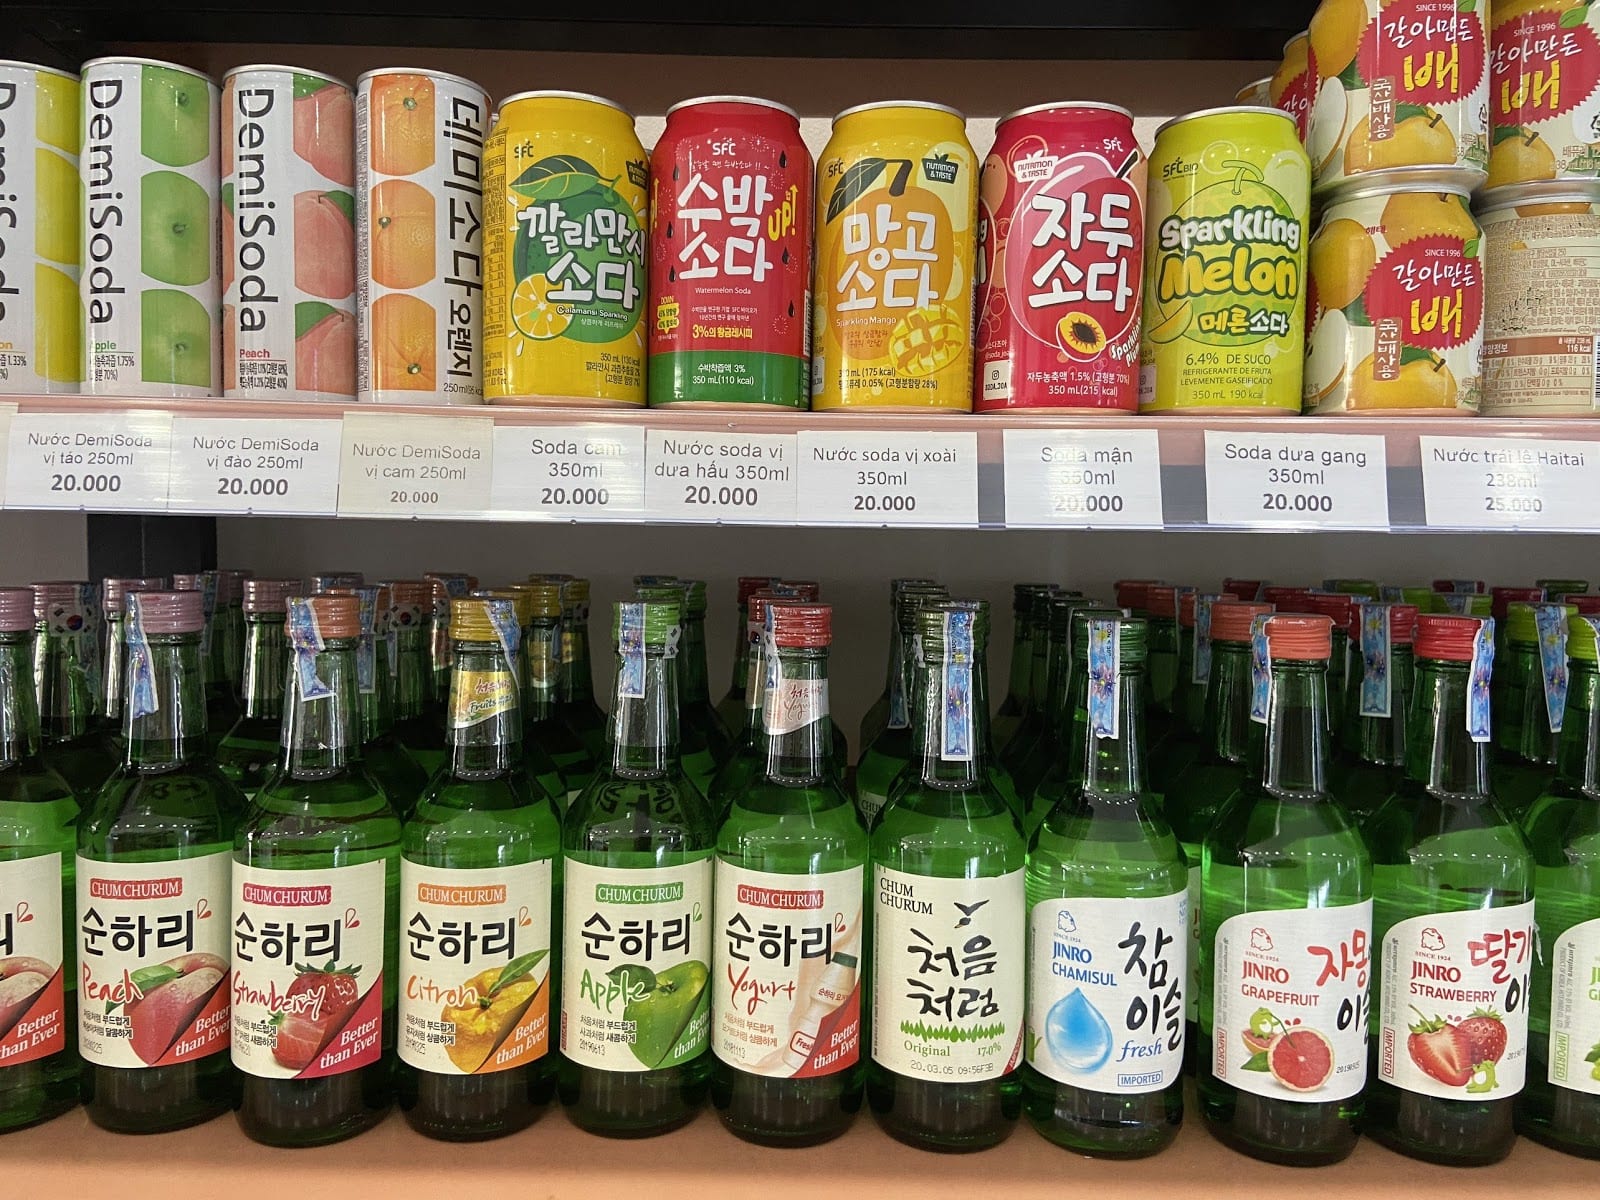 soju korea, rượu soju hàn quốc, soju trái cây, soju hàn quốc, rượu soju hàn quốc giá bao nhiêu, soju pha, các loại rượu soju hàn quốc, soju cam, rượu soju hàn quốc bao nhiêu độ, mua rượu soju hàn quốc, nơi bán rượu soju hàn quốc, rượu soju hàn quốc vinmart, soju các vị, giá bán rượu soju hàn quốc, soju sor, cách uống rượu soju hàn quốc, rượu soju 45 độ, rượu soju, soju, rượu hàn quốc, ruou han quoc, rượu soju 40 độ